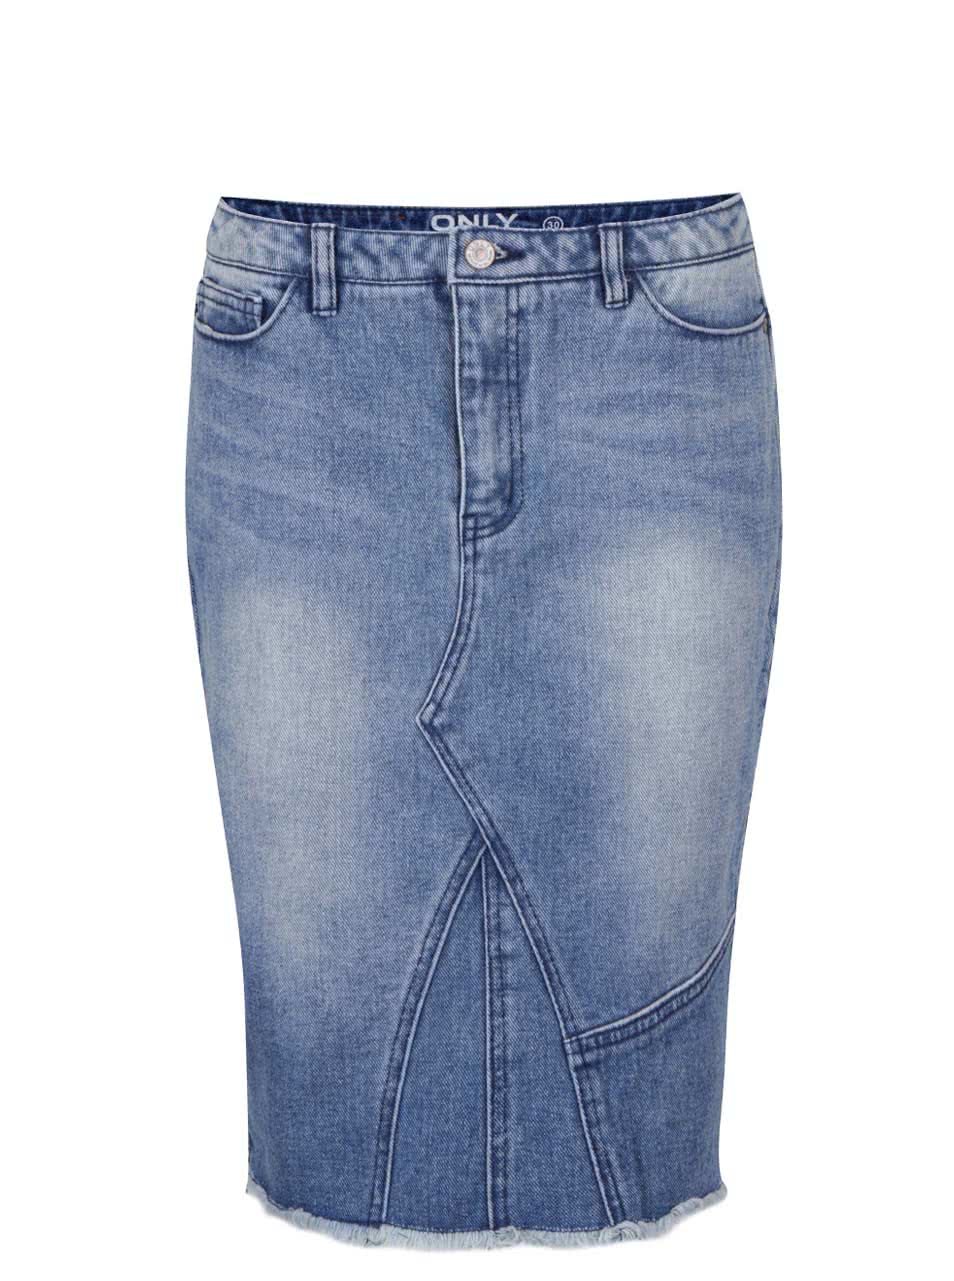 Modrá džínová sukně s ozdobným zipem ONLY Denim